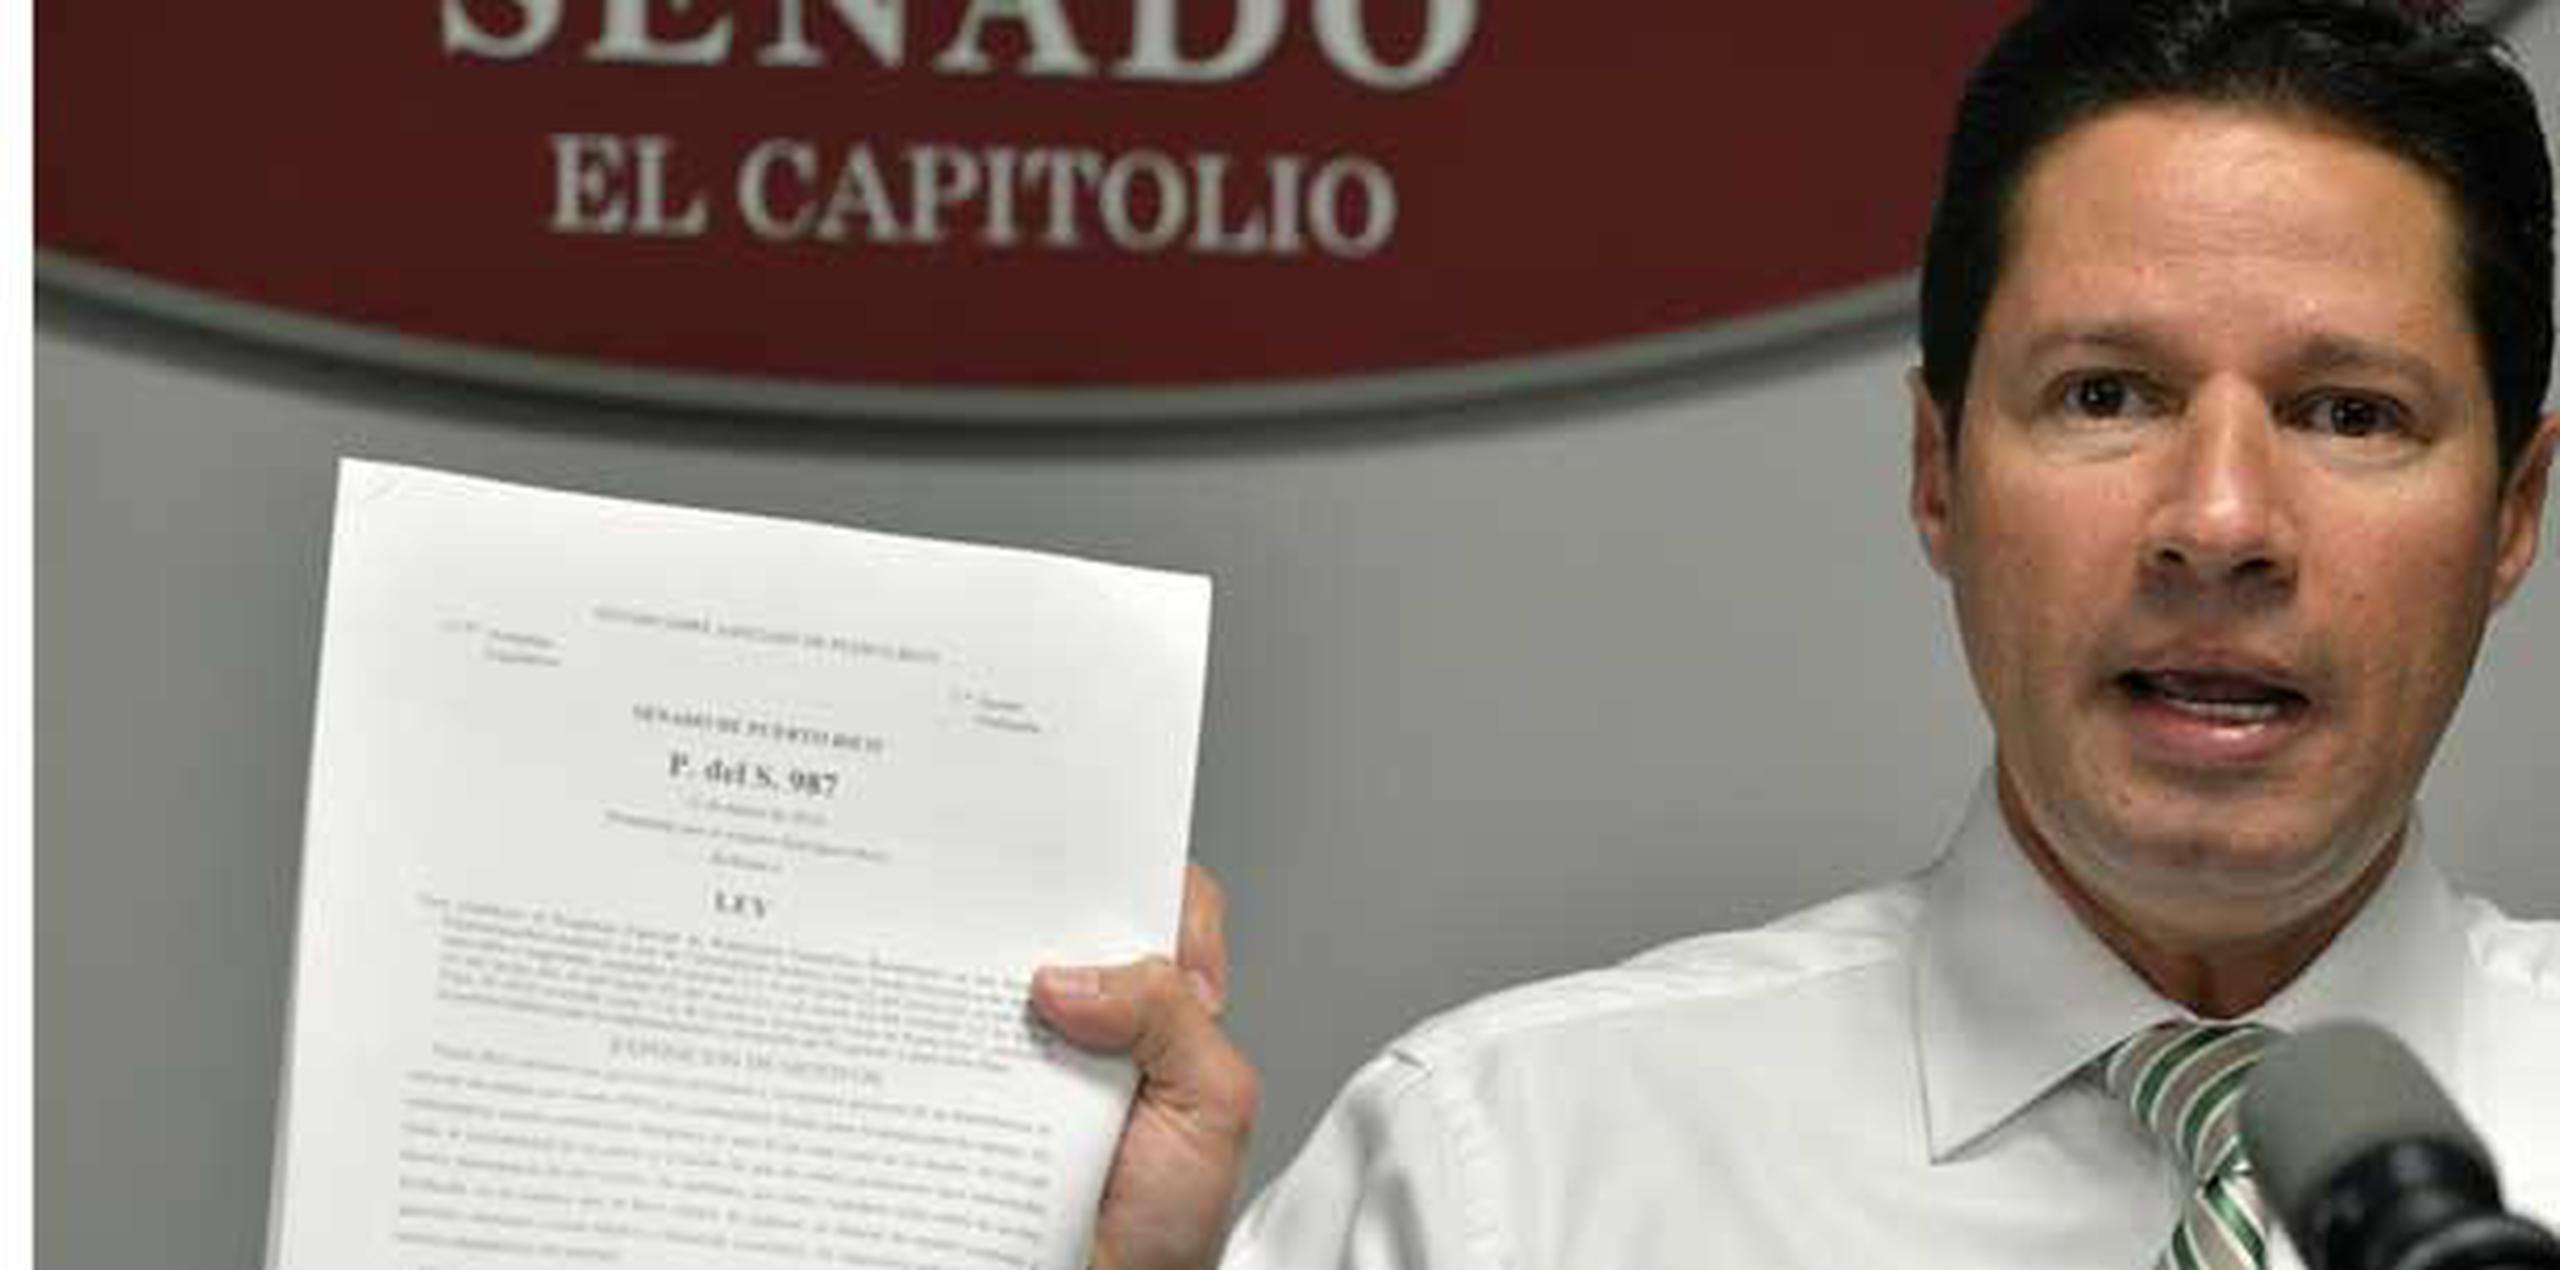 Según el senador popular Ángel Rodríguez, propulsor principal de la medida, el programa podría generar ahorros de entre 20% y 30% en la factura residencial de energía eléctrica. (Archivo)